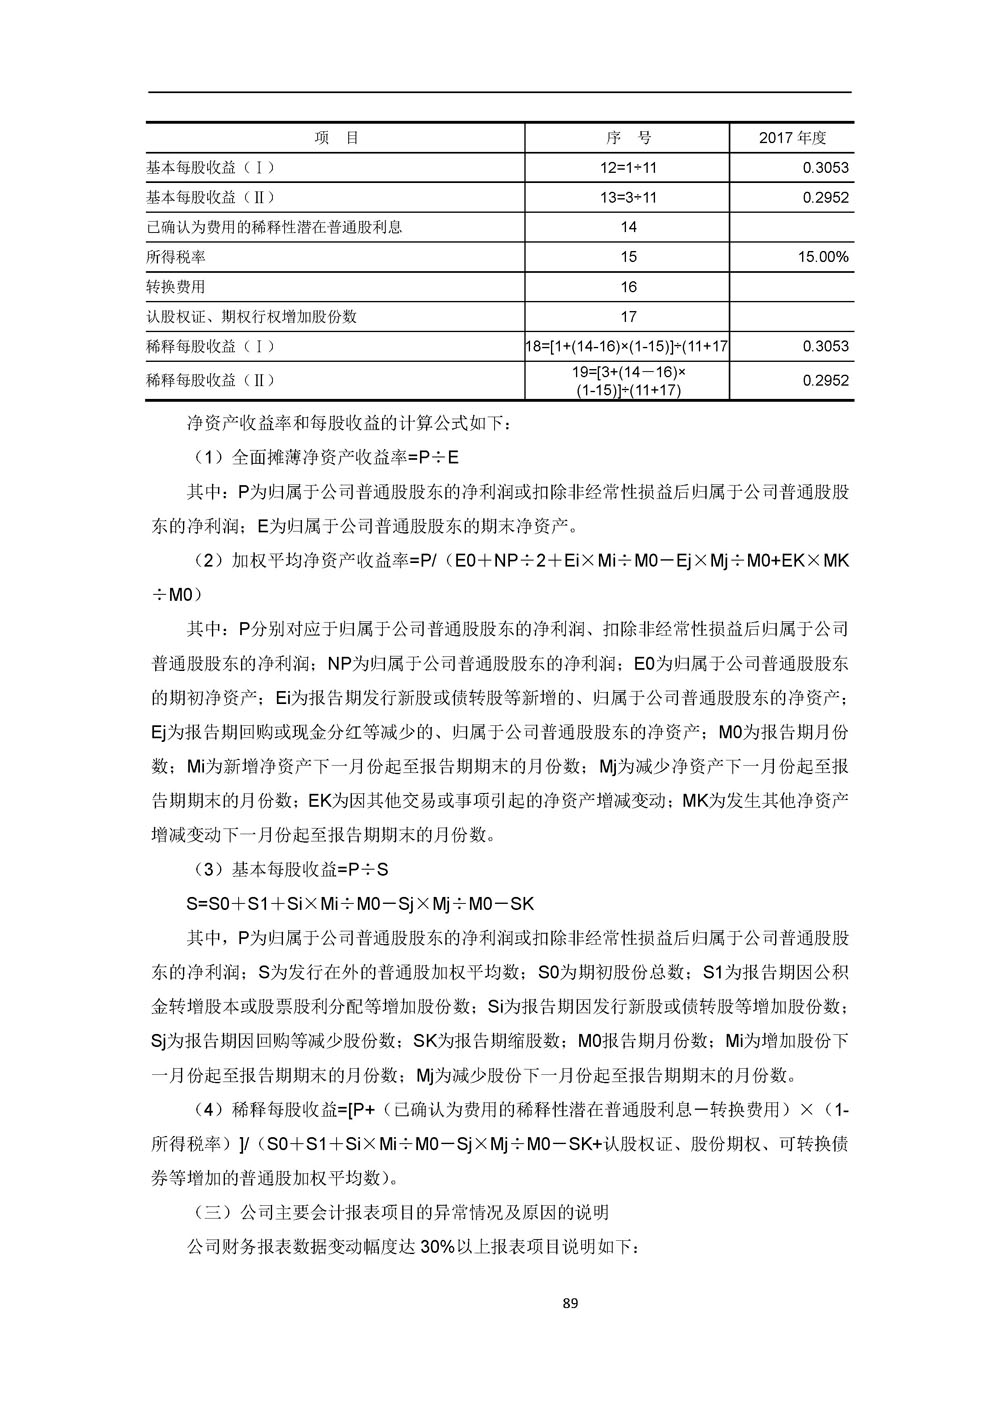 湖南惠同新材料股份有限公司